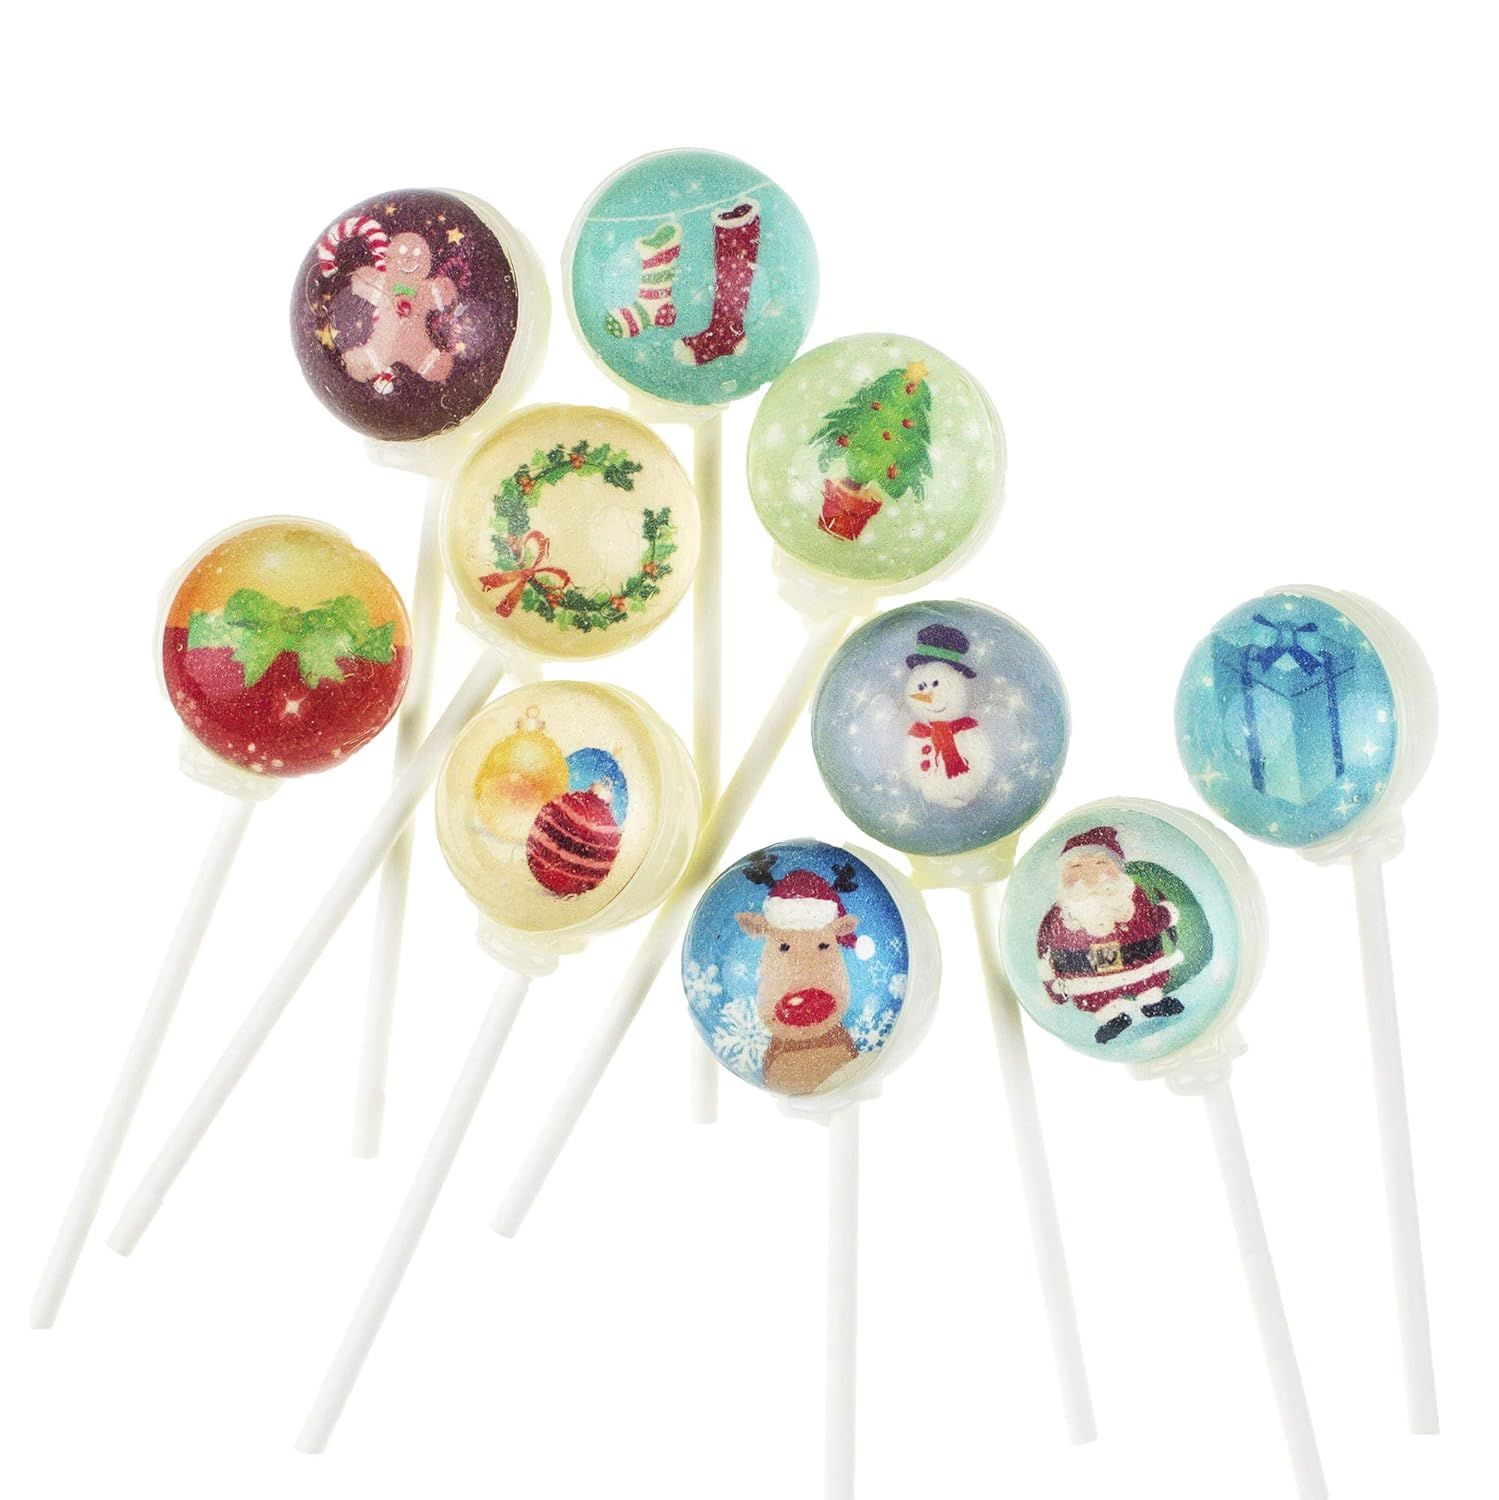 3D Lollipops Christmas Characters Designs (10 Piece Set) | Amazon (US)